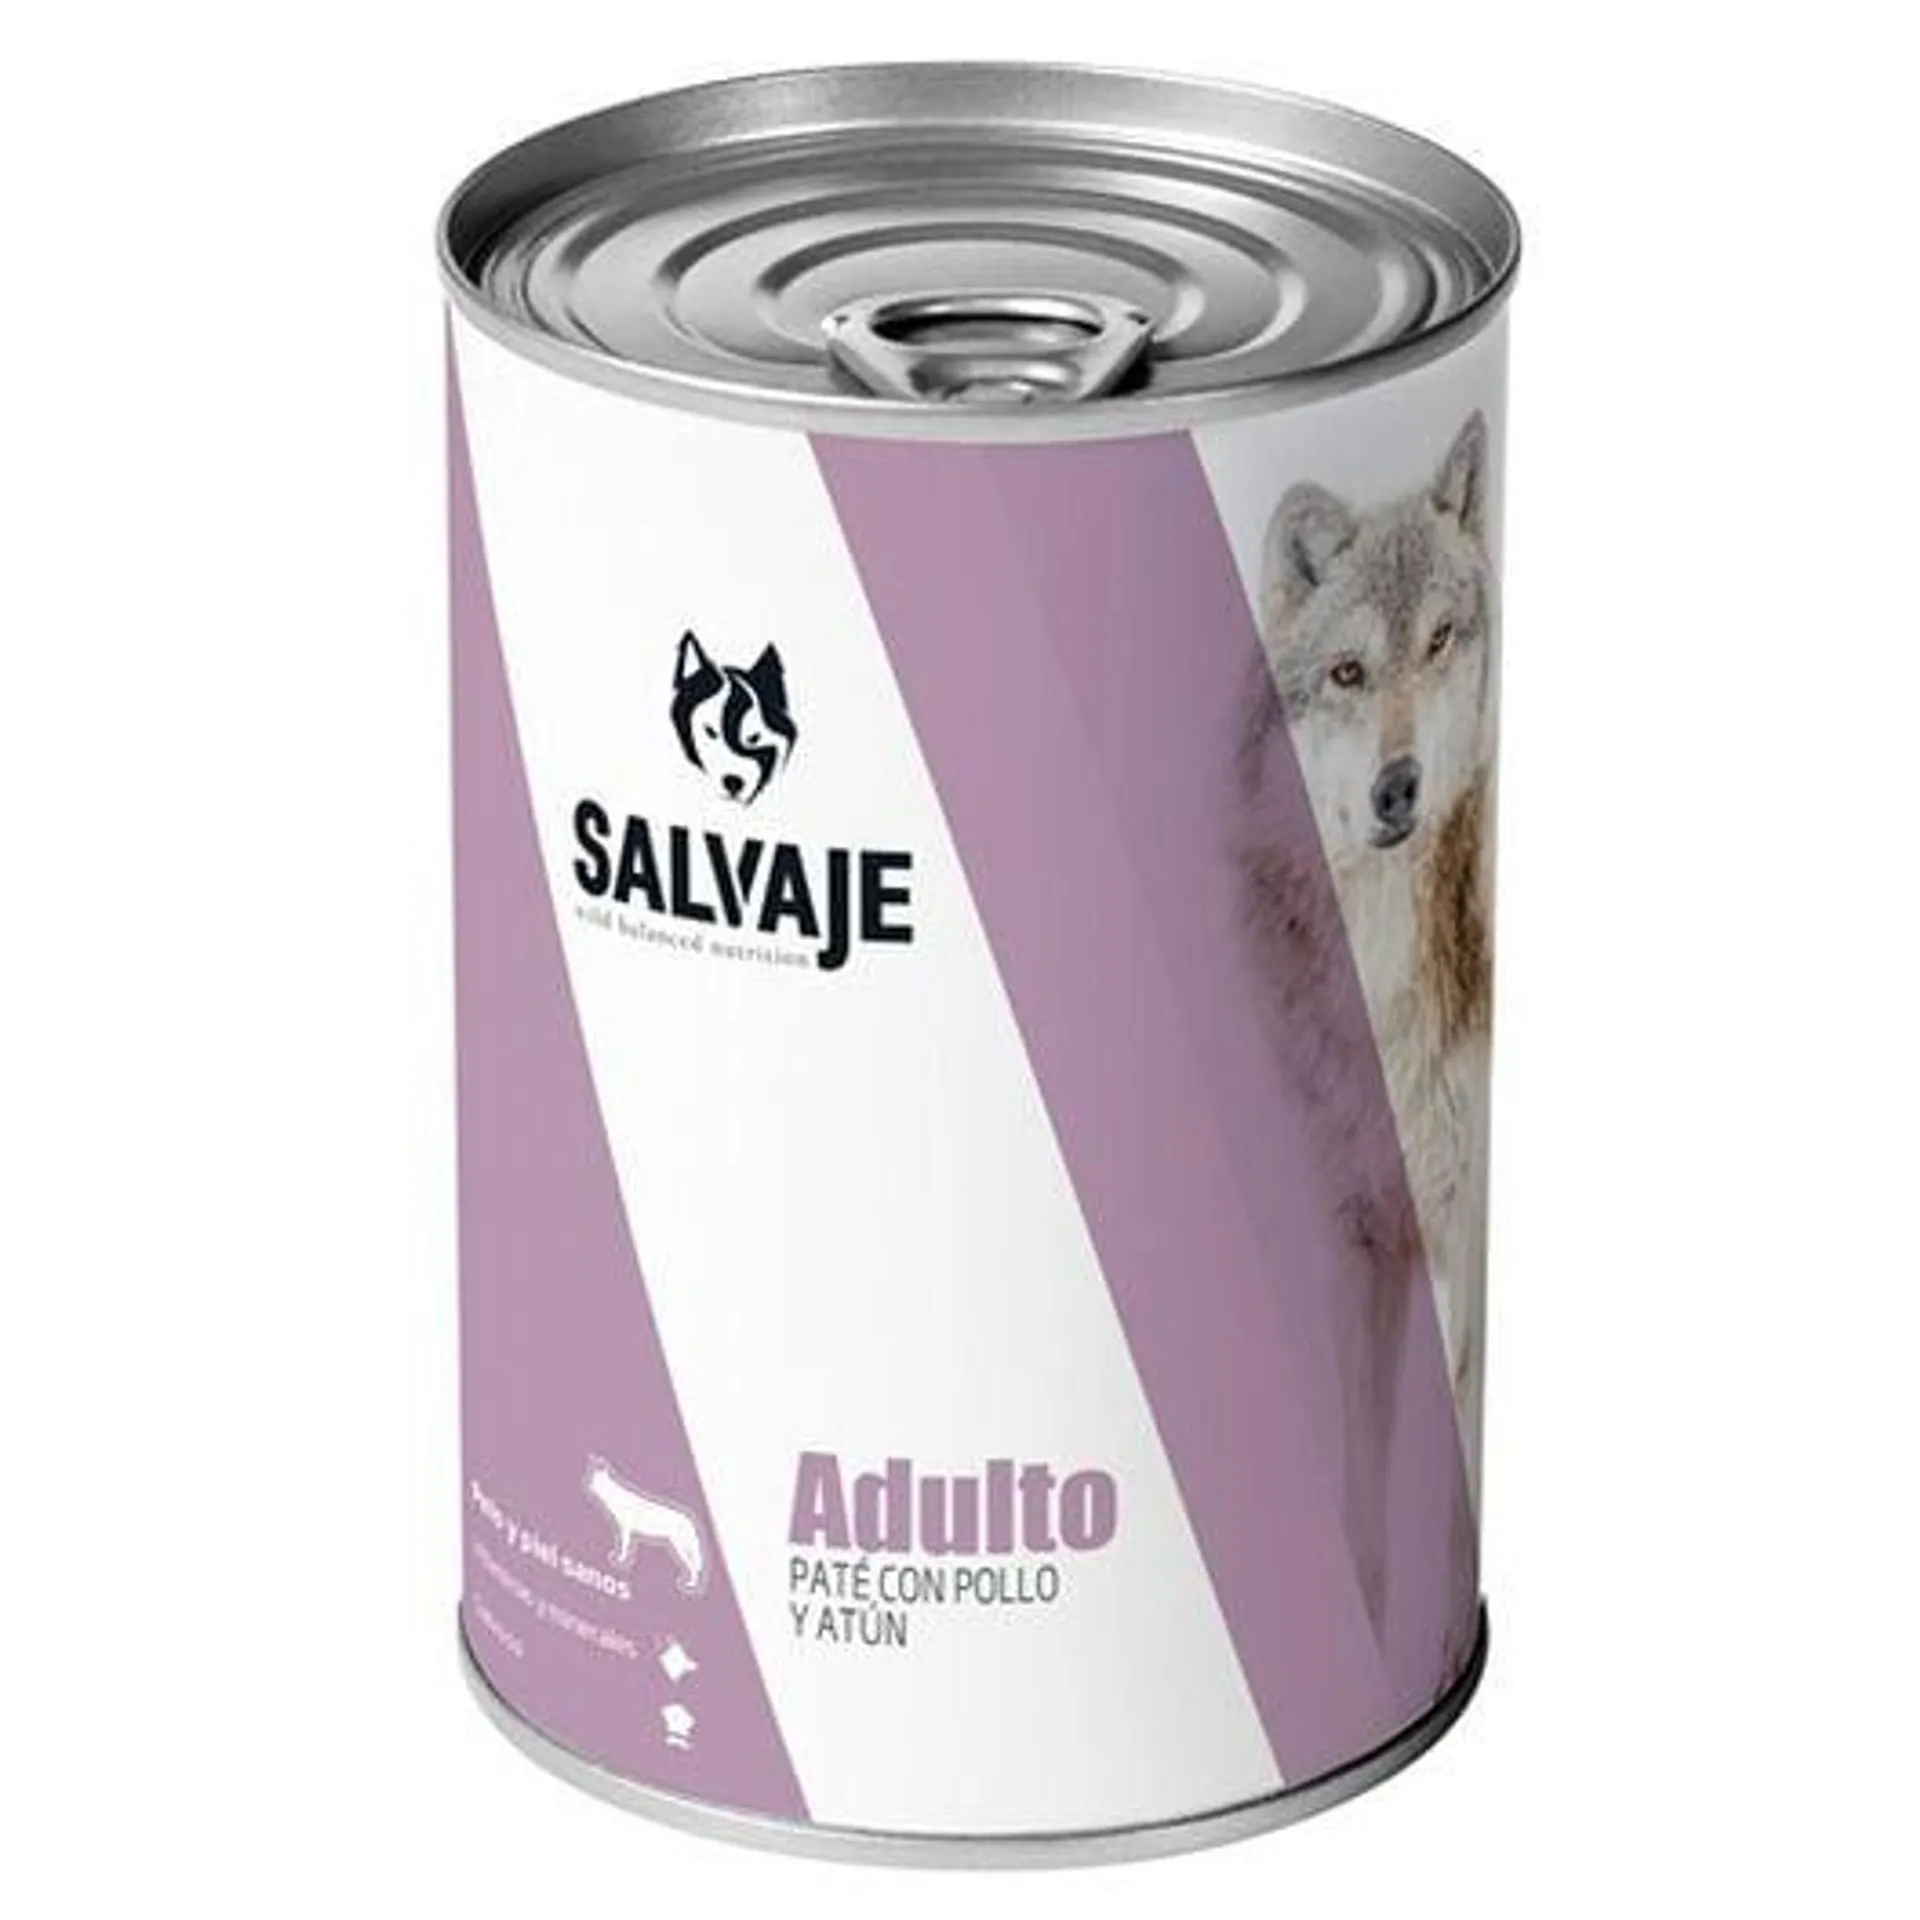 Salvaje Adulto Frango e Atum patê em lata para cães